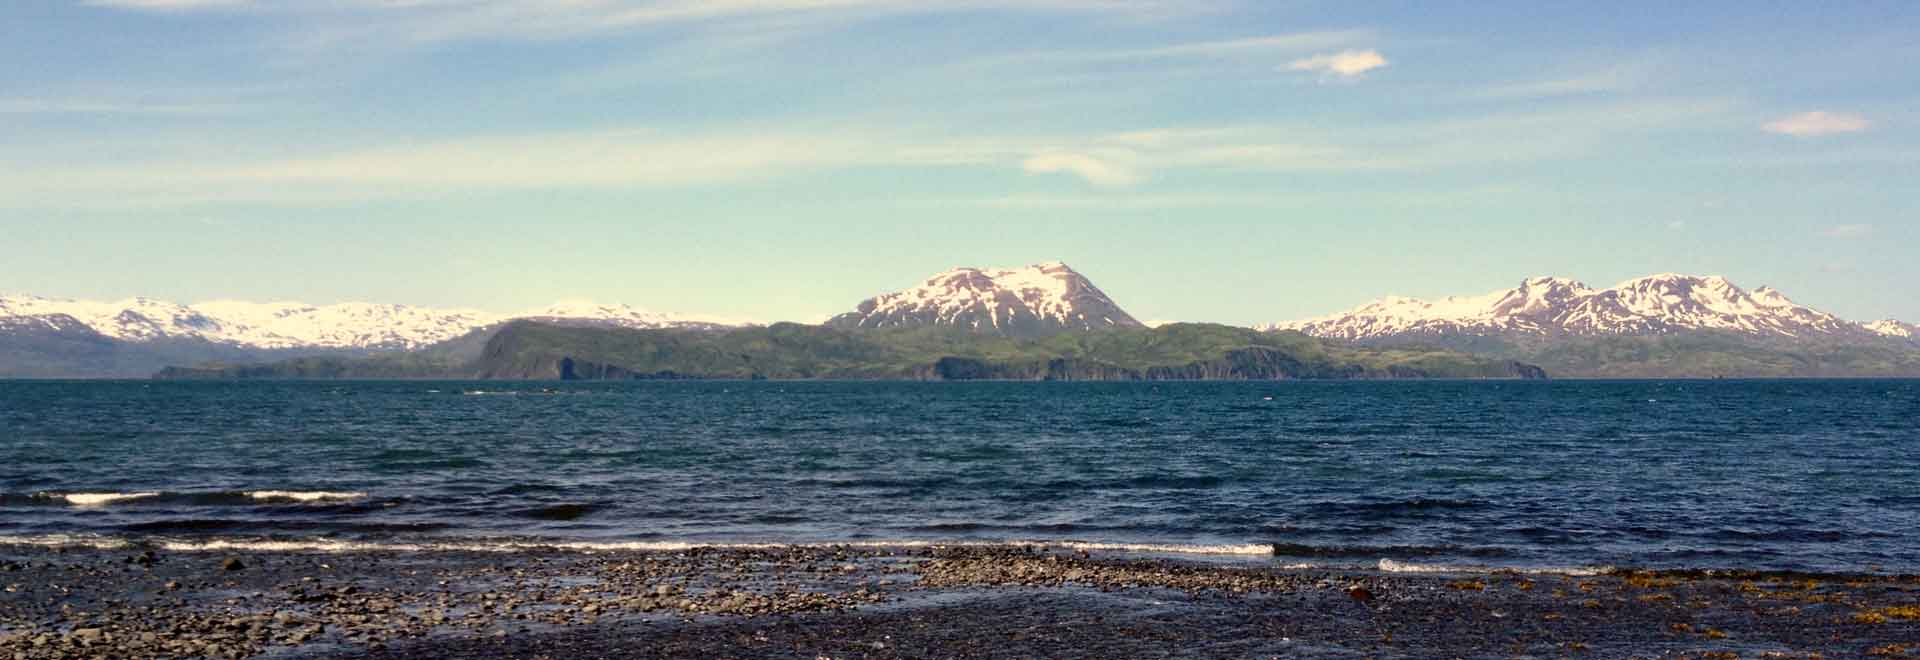 Accessing Alaska